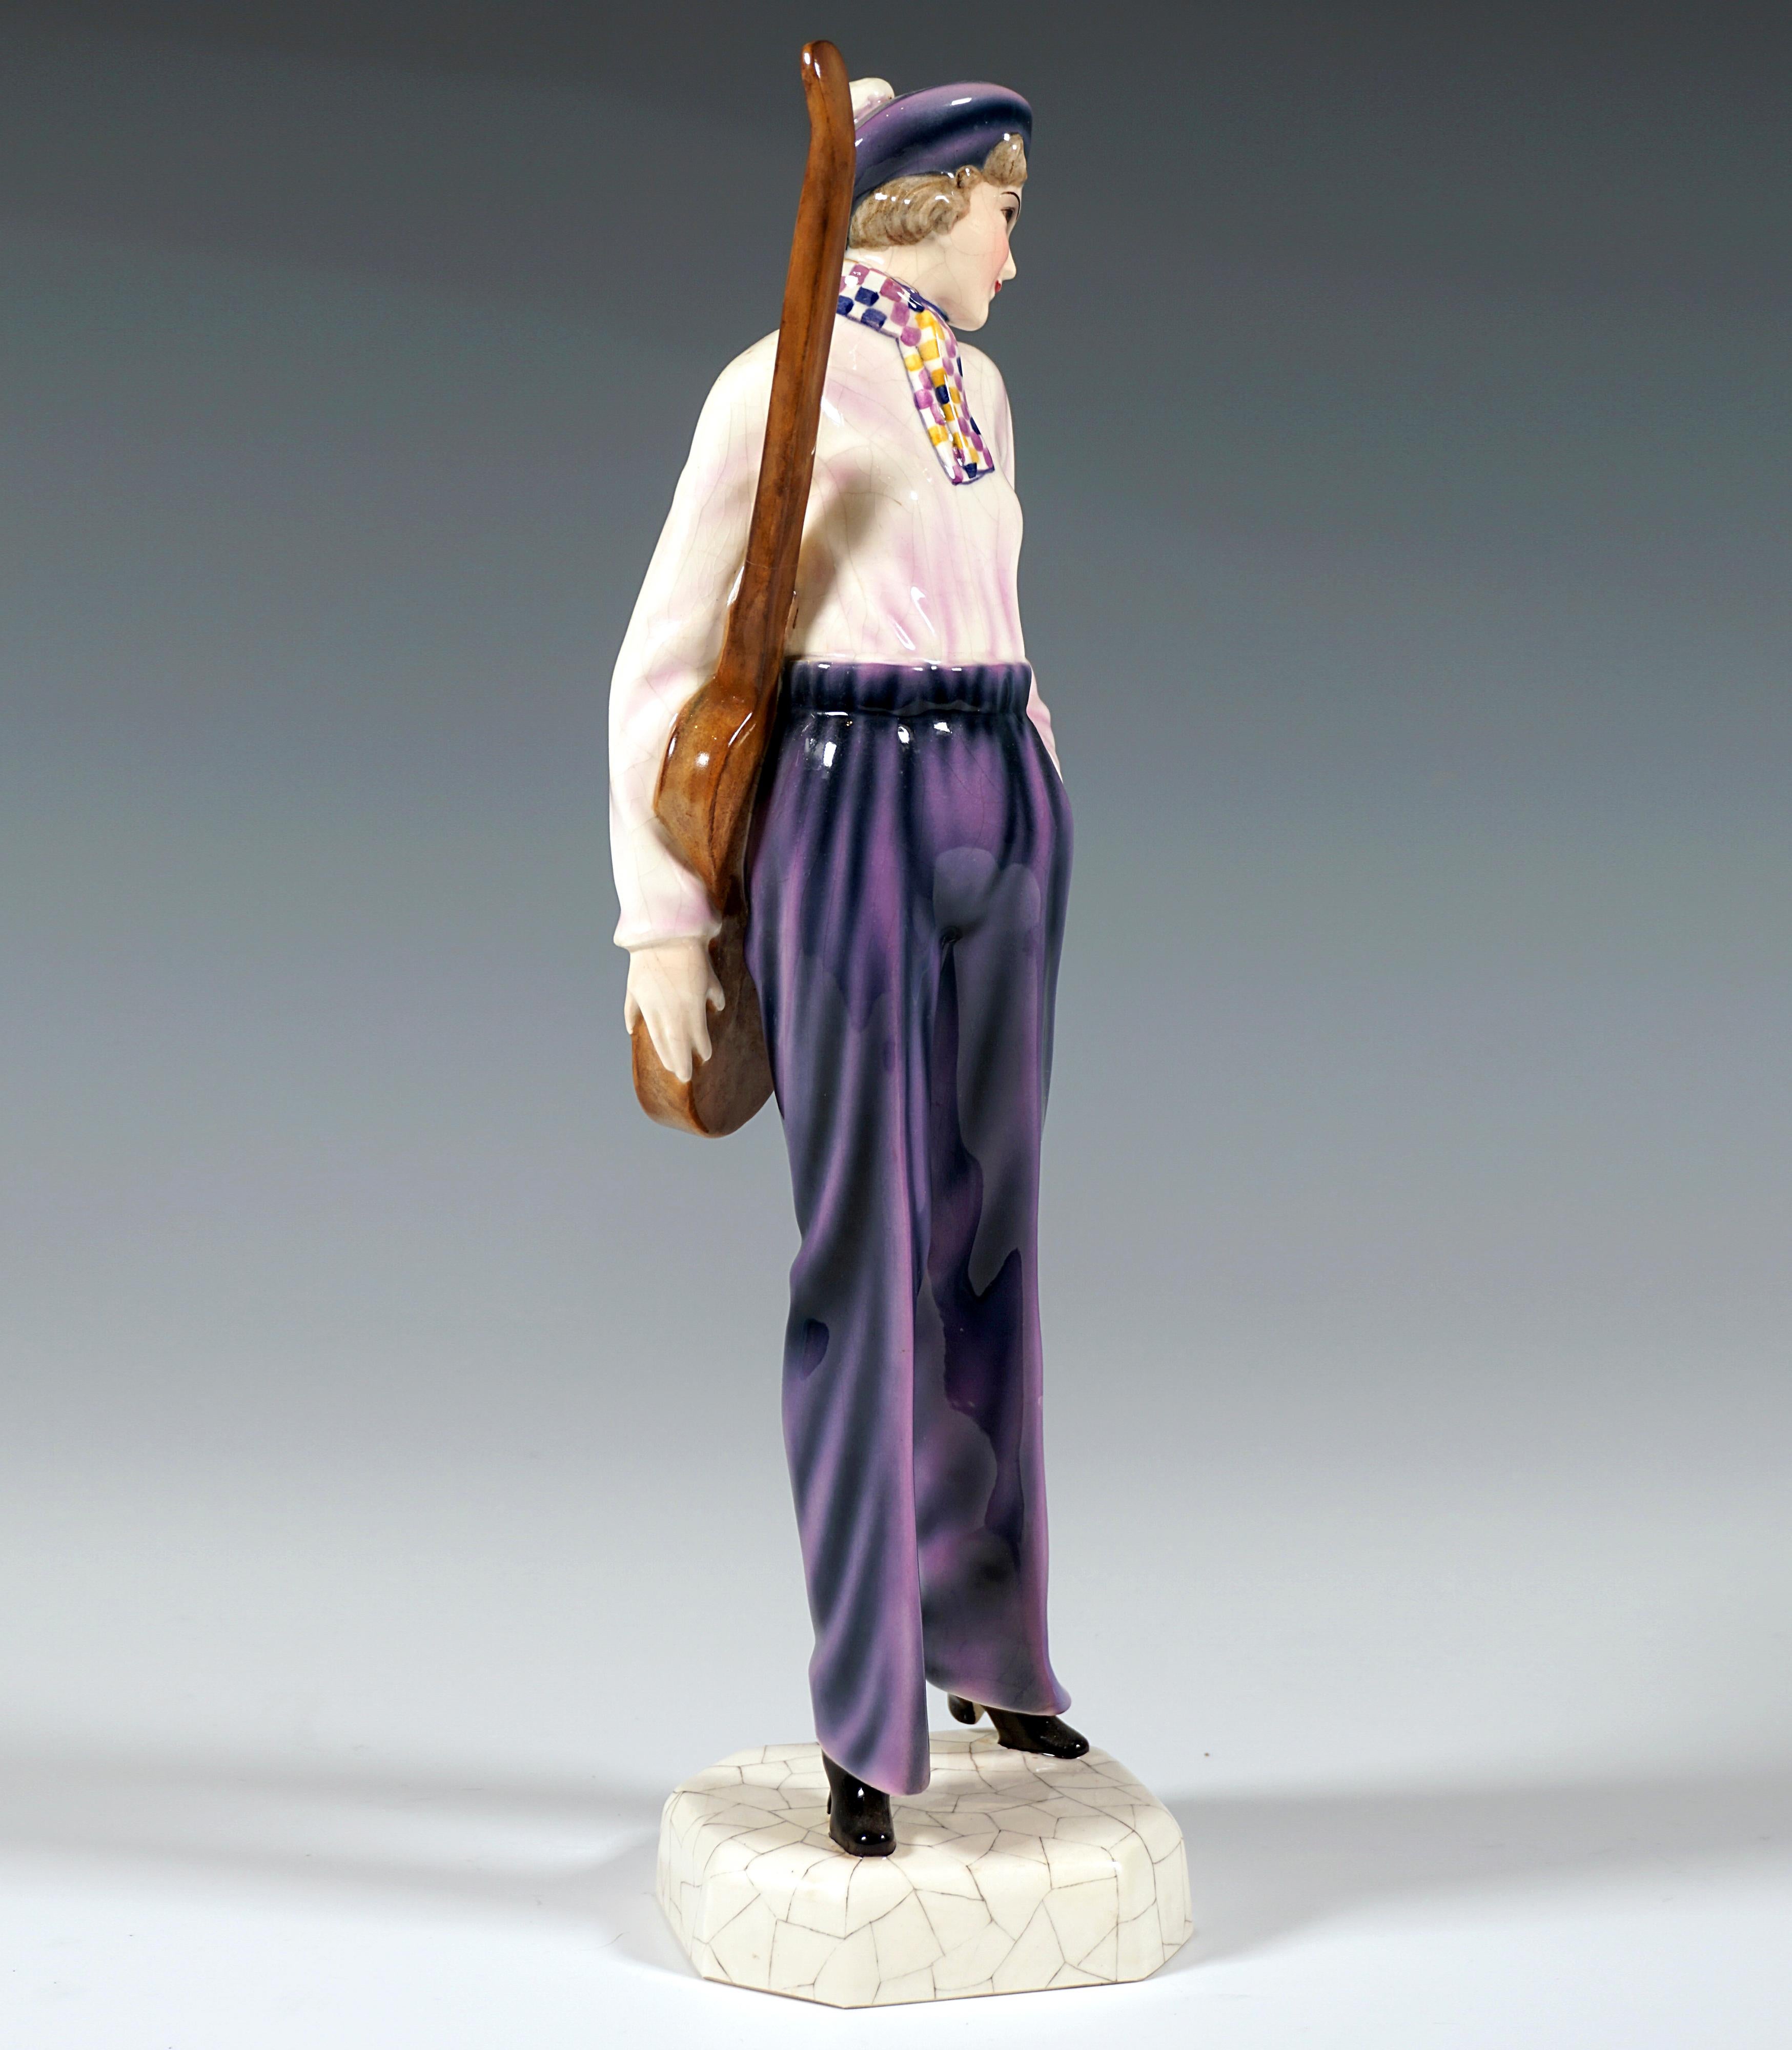 Sehr seltene Kunstkeramik-Figur aus den frühen 1930er Jahren:
Stehende junge Frau mit Pullman-Cap und Bob-Frisur, Kopf nach links gedreht, in langärmeligem Hemd mit weiten Ärmeln und langer, gerader Hose mit Bügelfalten, kariertem Schal, eine